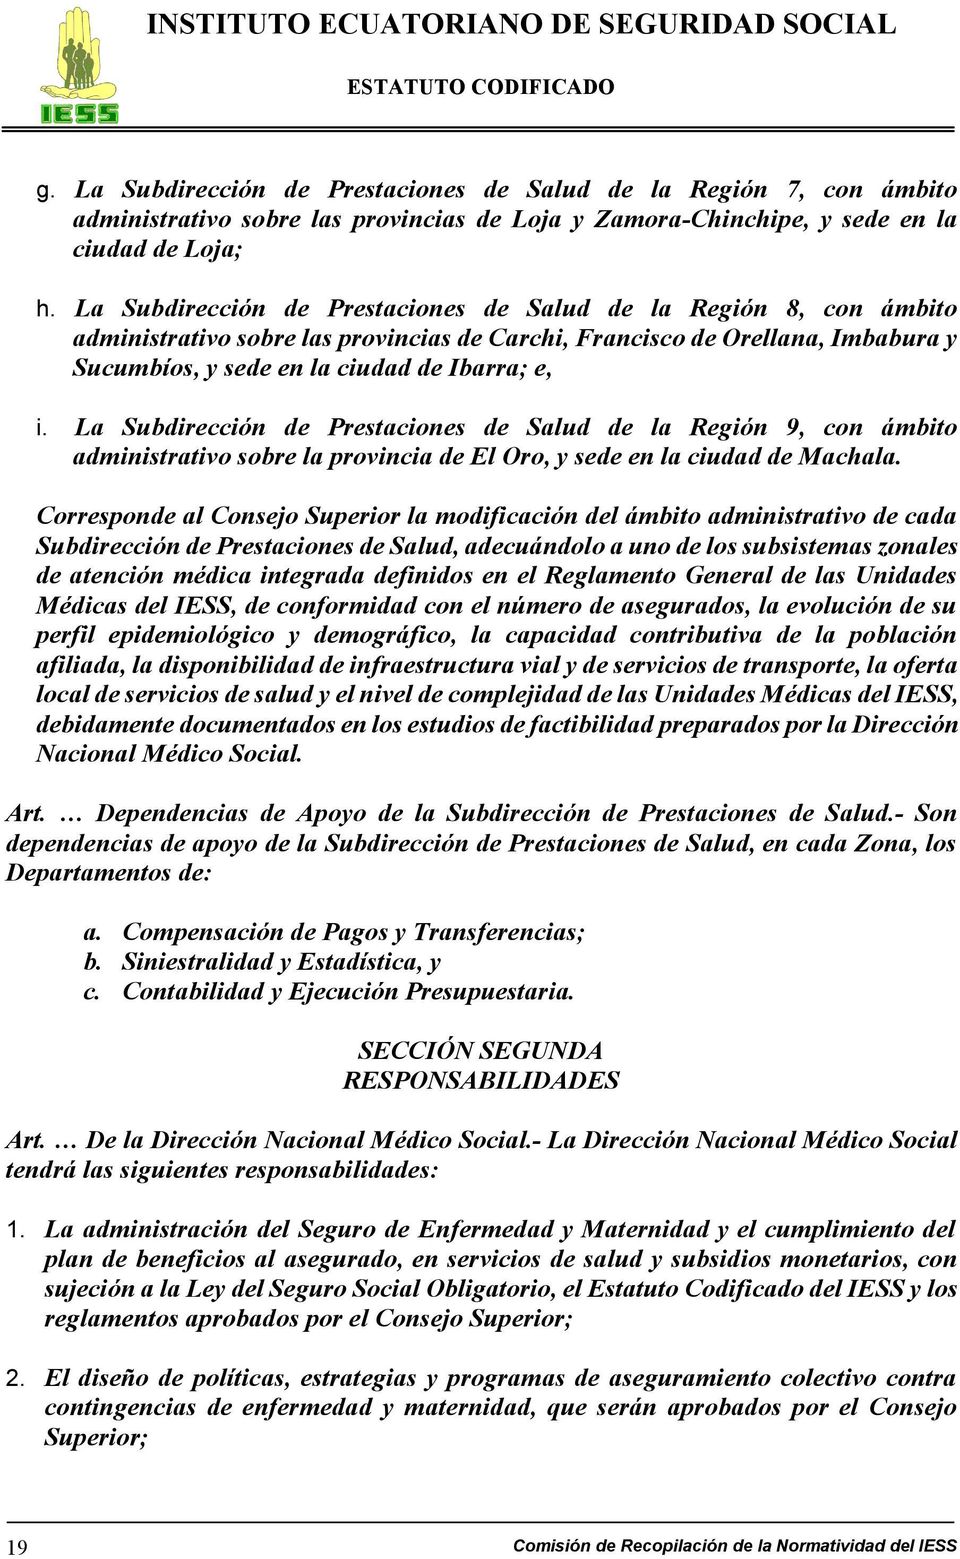 La Subdirección de Prestaciones de Salud de la Región 9, con ámbito administrativo sobre la provincia de El Oro, y sede en la ciudad de Machala.